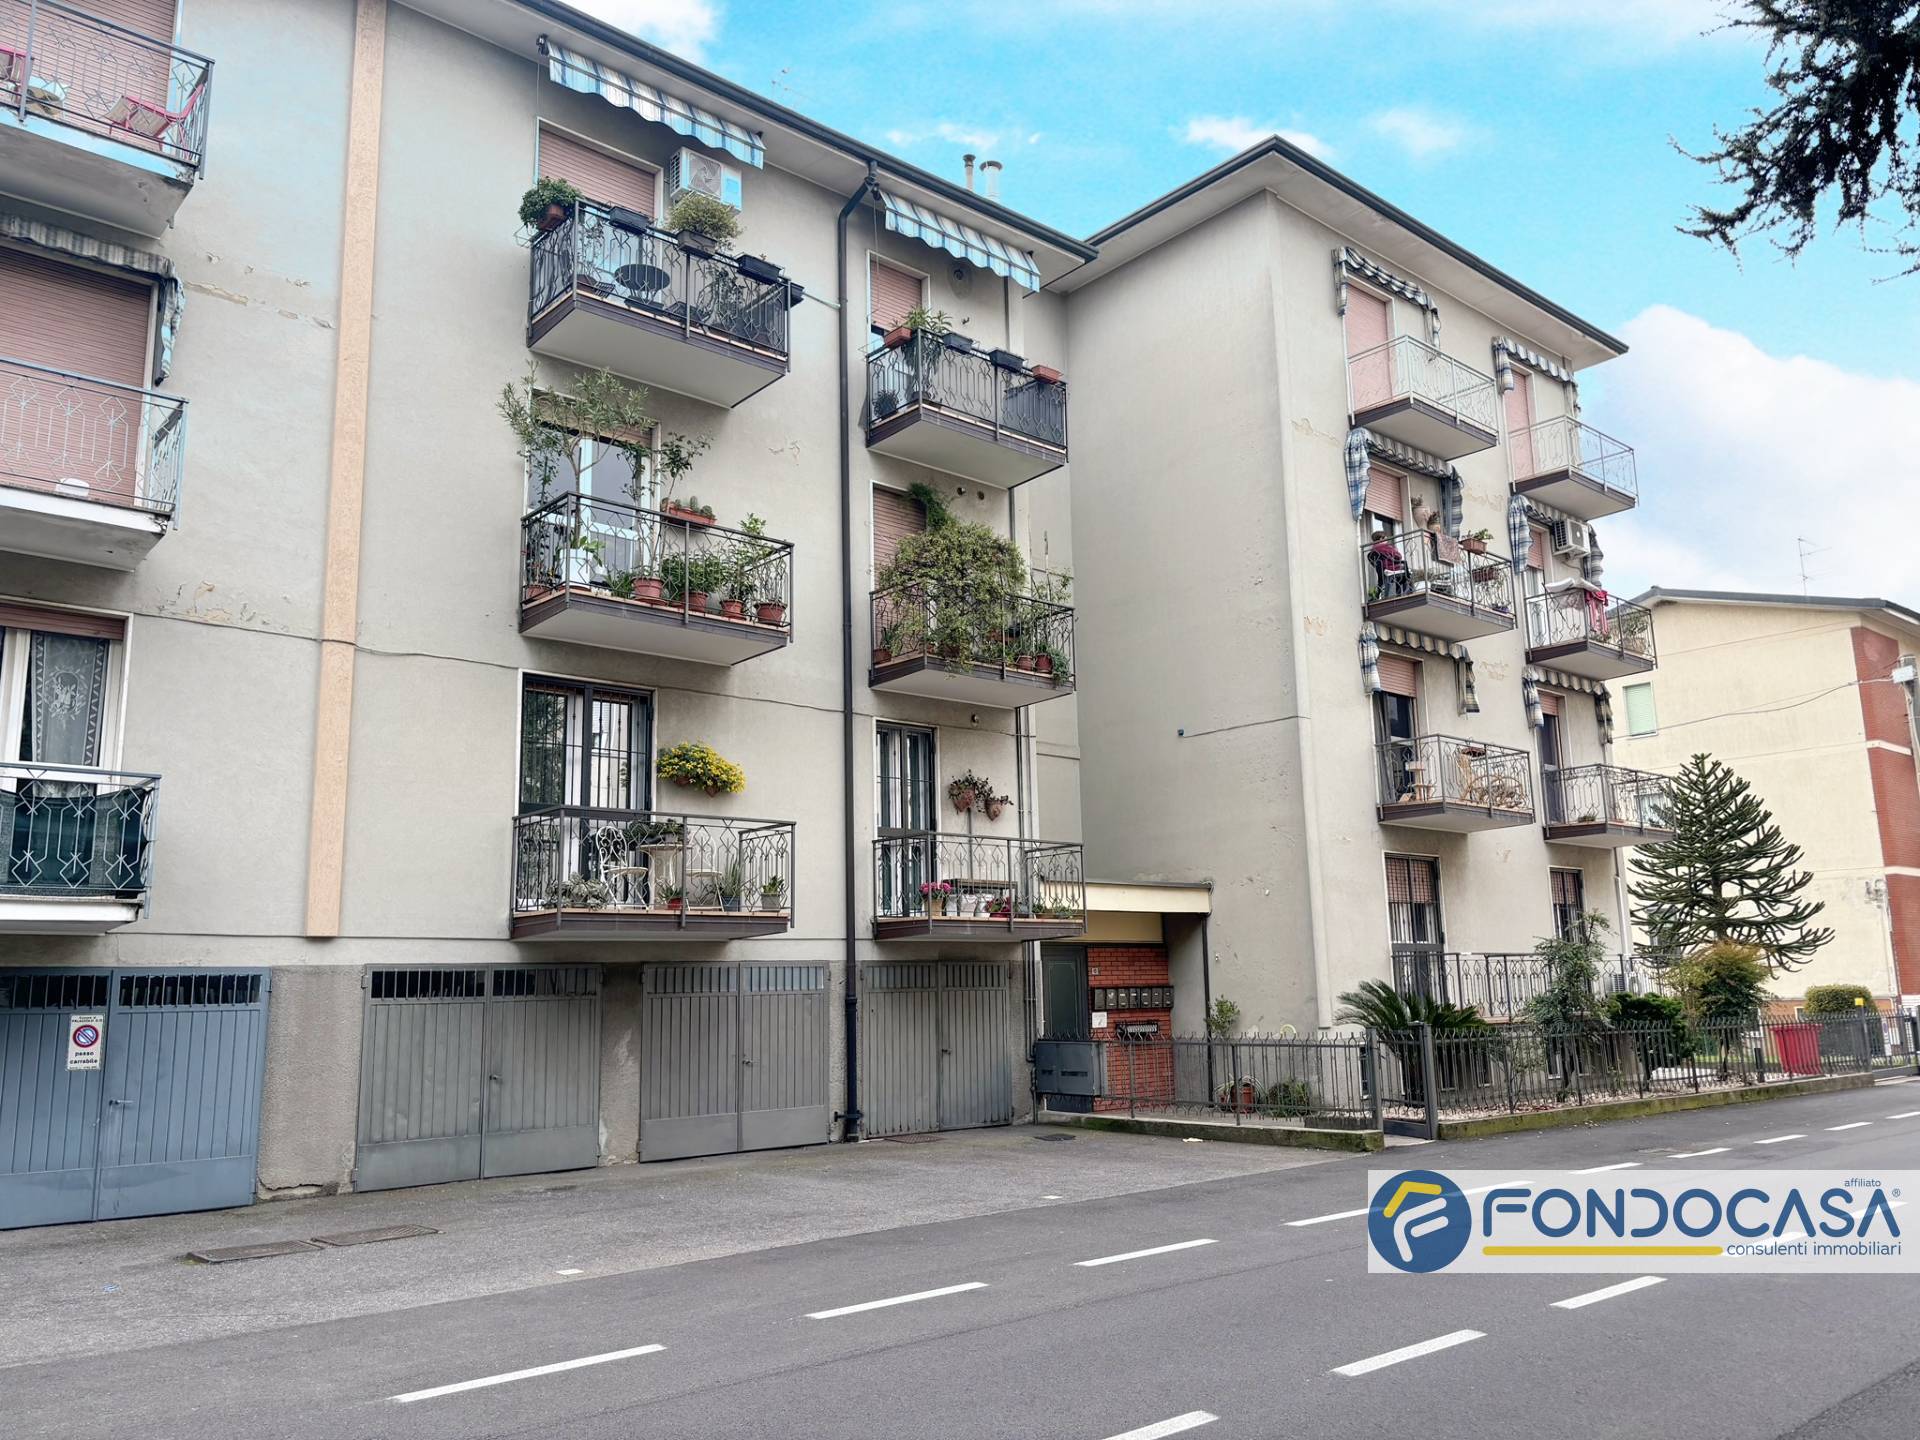 Appartamento in vendita a Palazzolo sull'Oglio, 3 locali, prezzo € 145.000 | PortaleAgenzieImmobiliari.it